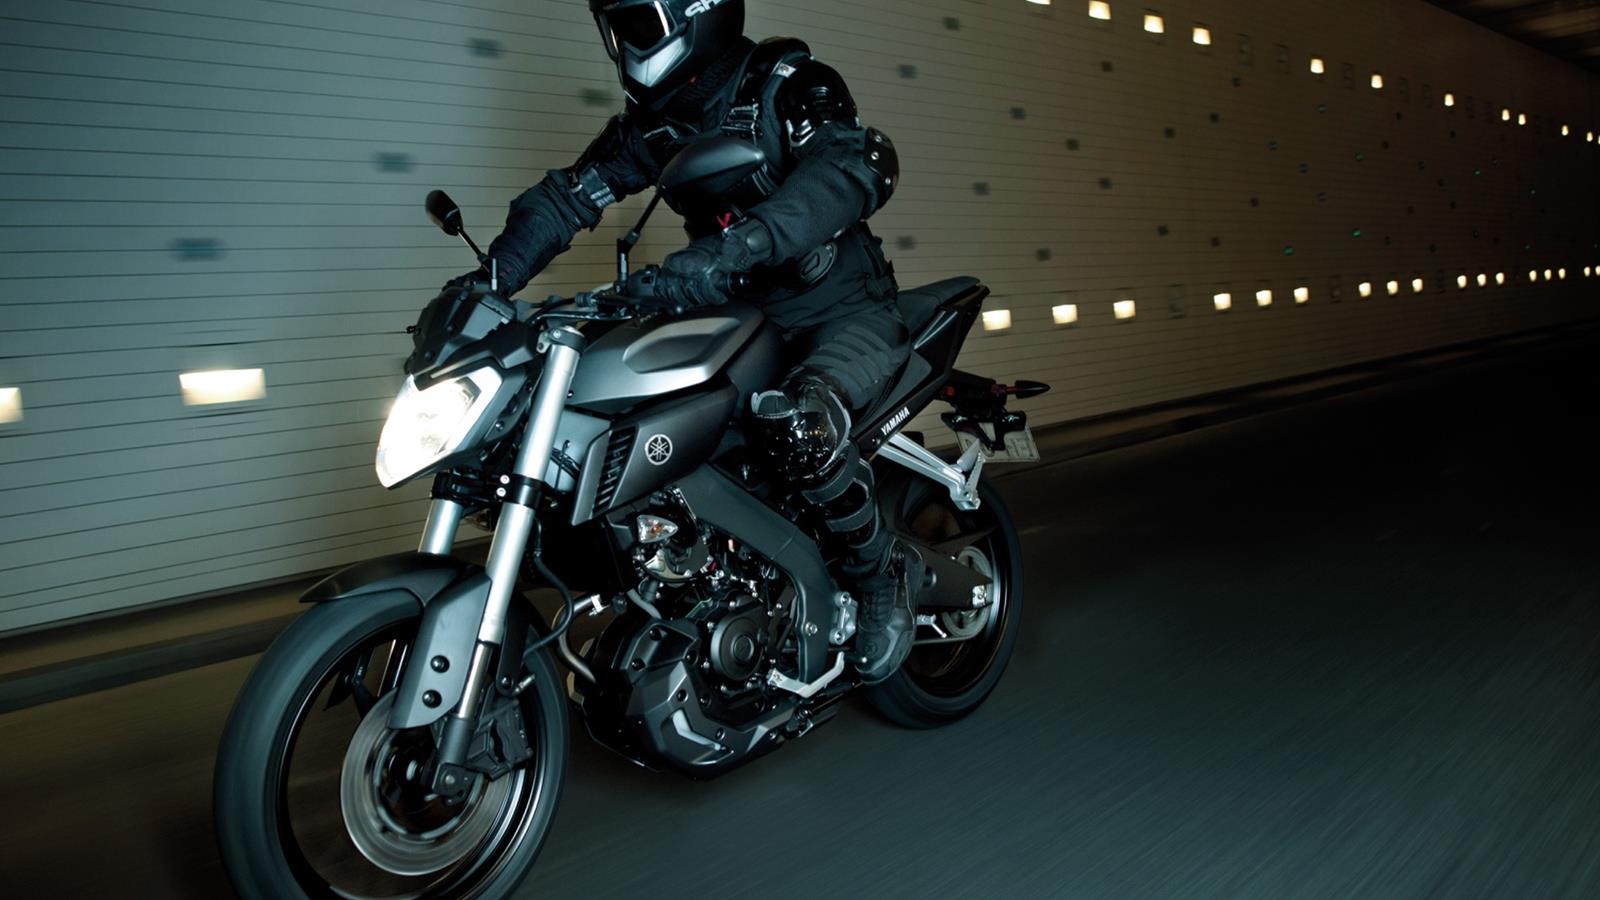 Nebojte se temnoty! Nová generace modelů MT společnosti Yamaha od základů proměnila svět motocyklů. Radikální styl a ultramoderní image řady MT je zárukou nefalšovaných emocí při jízdě.